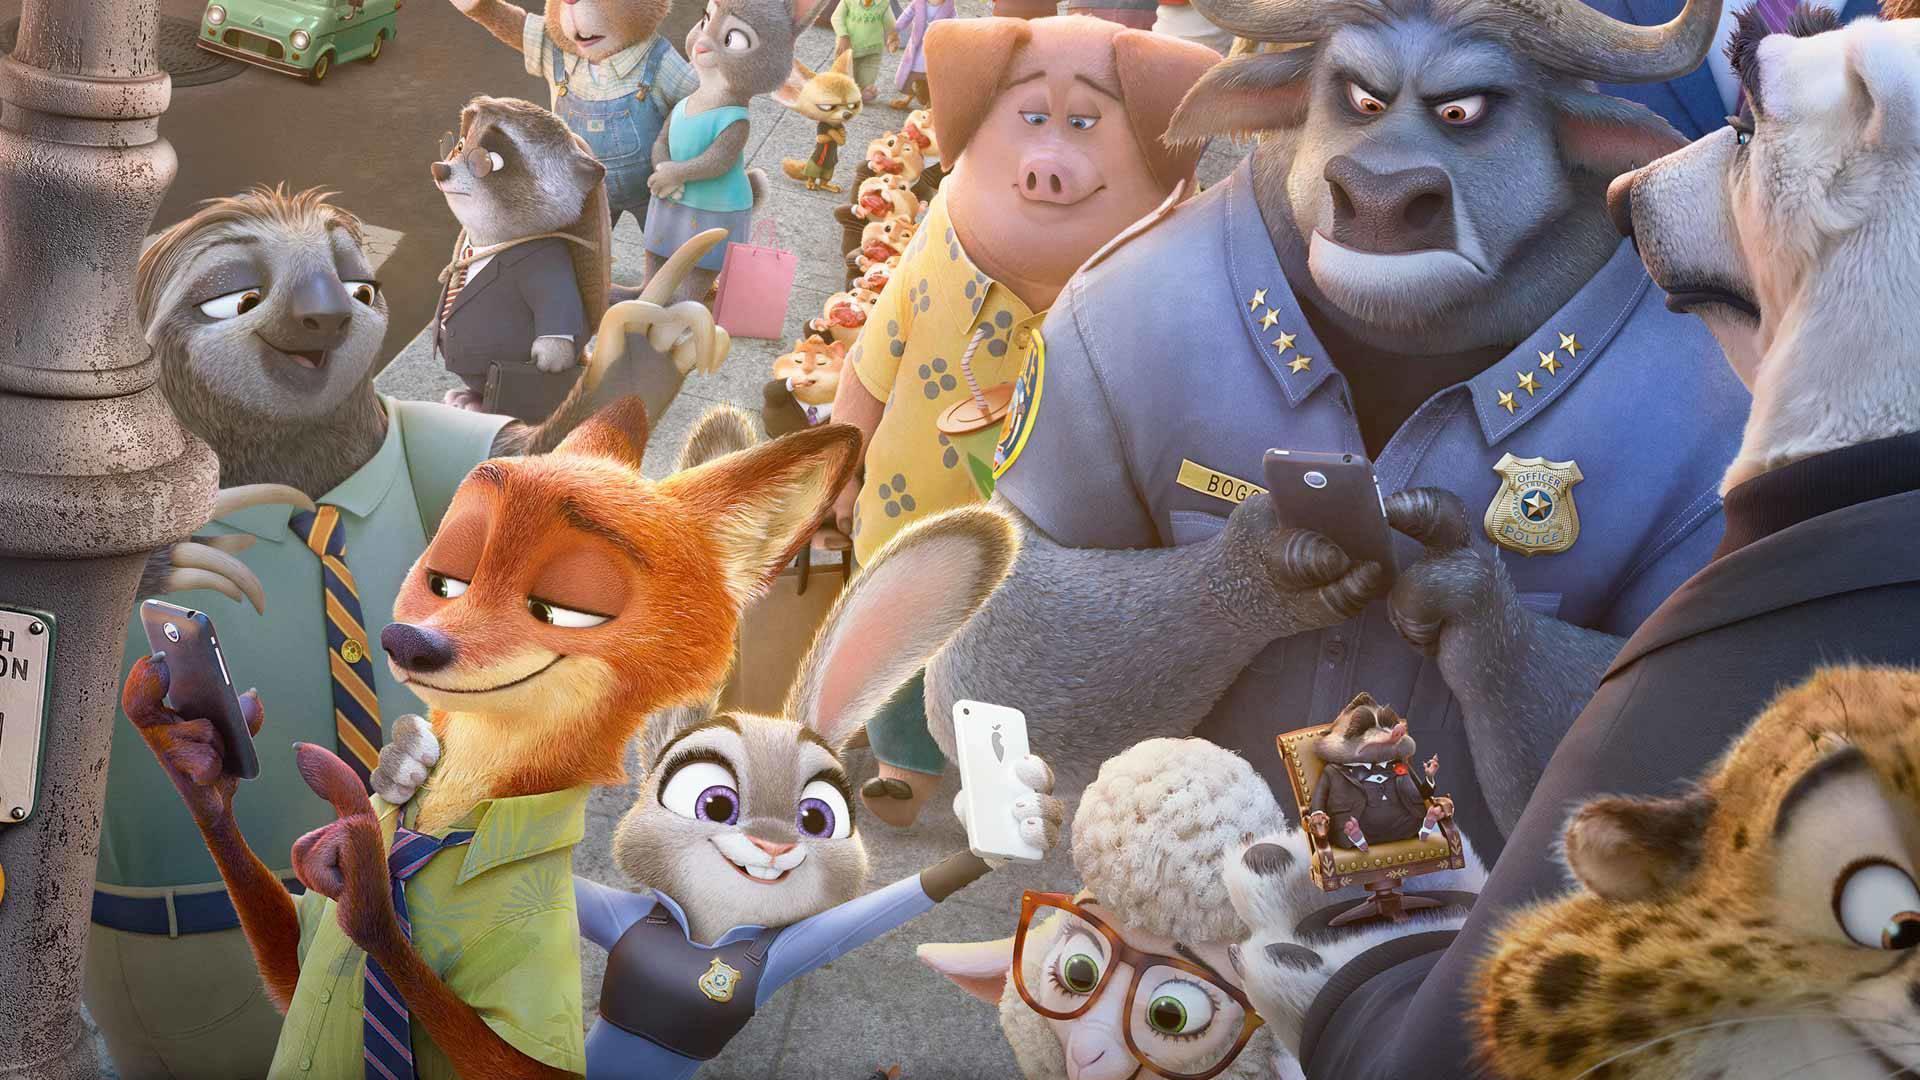 Disney's Zootopia Movie – 2 New Clips